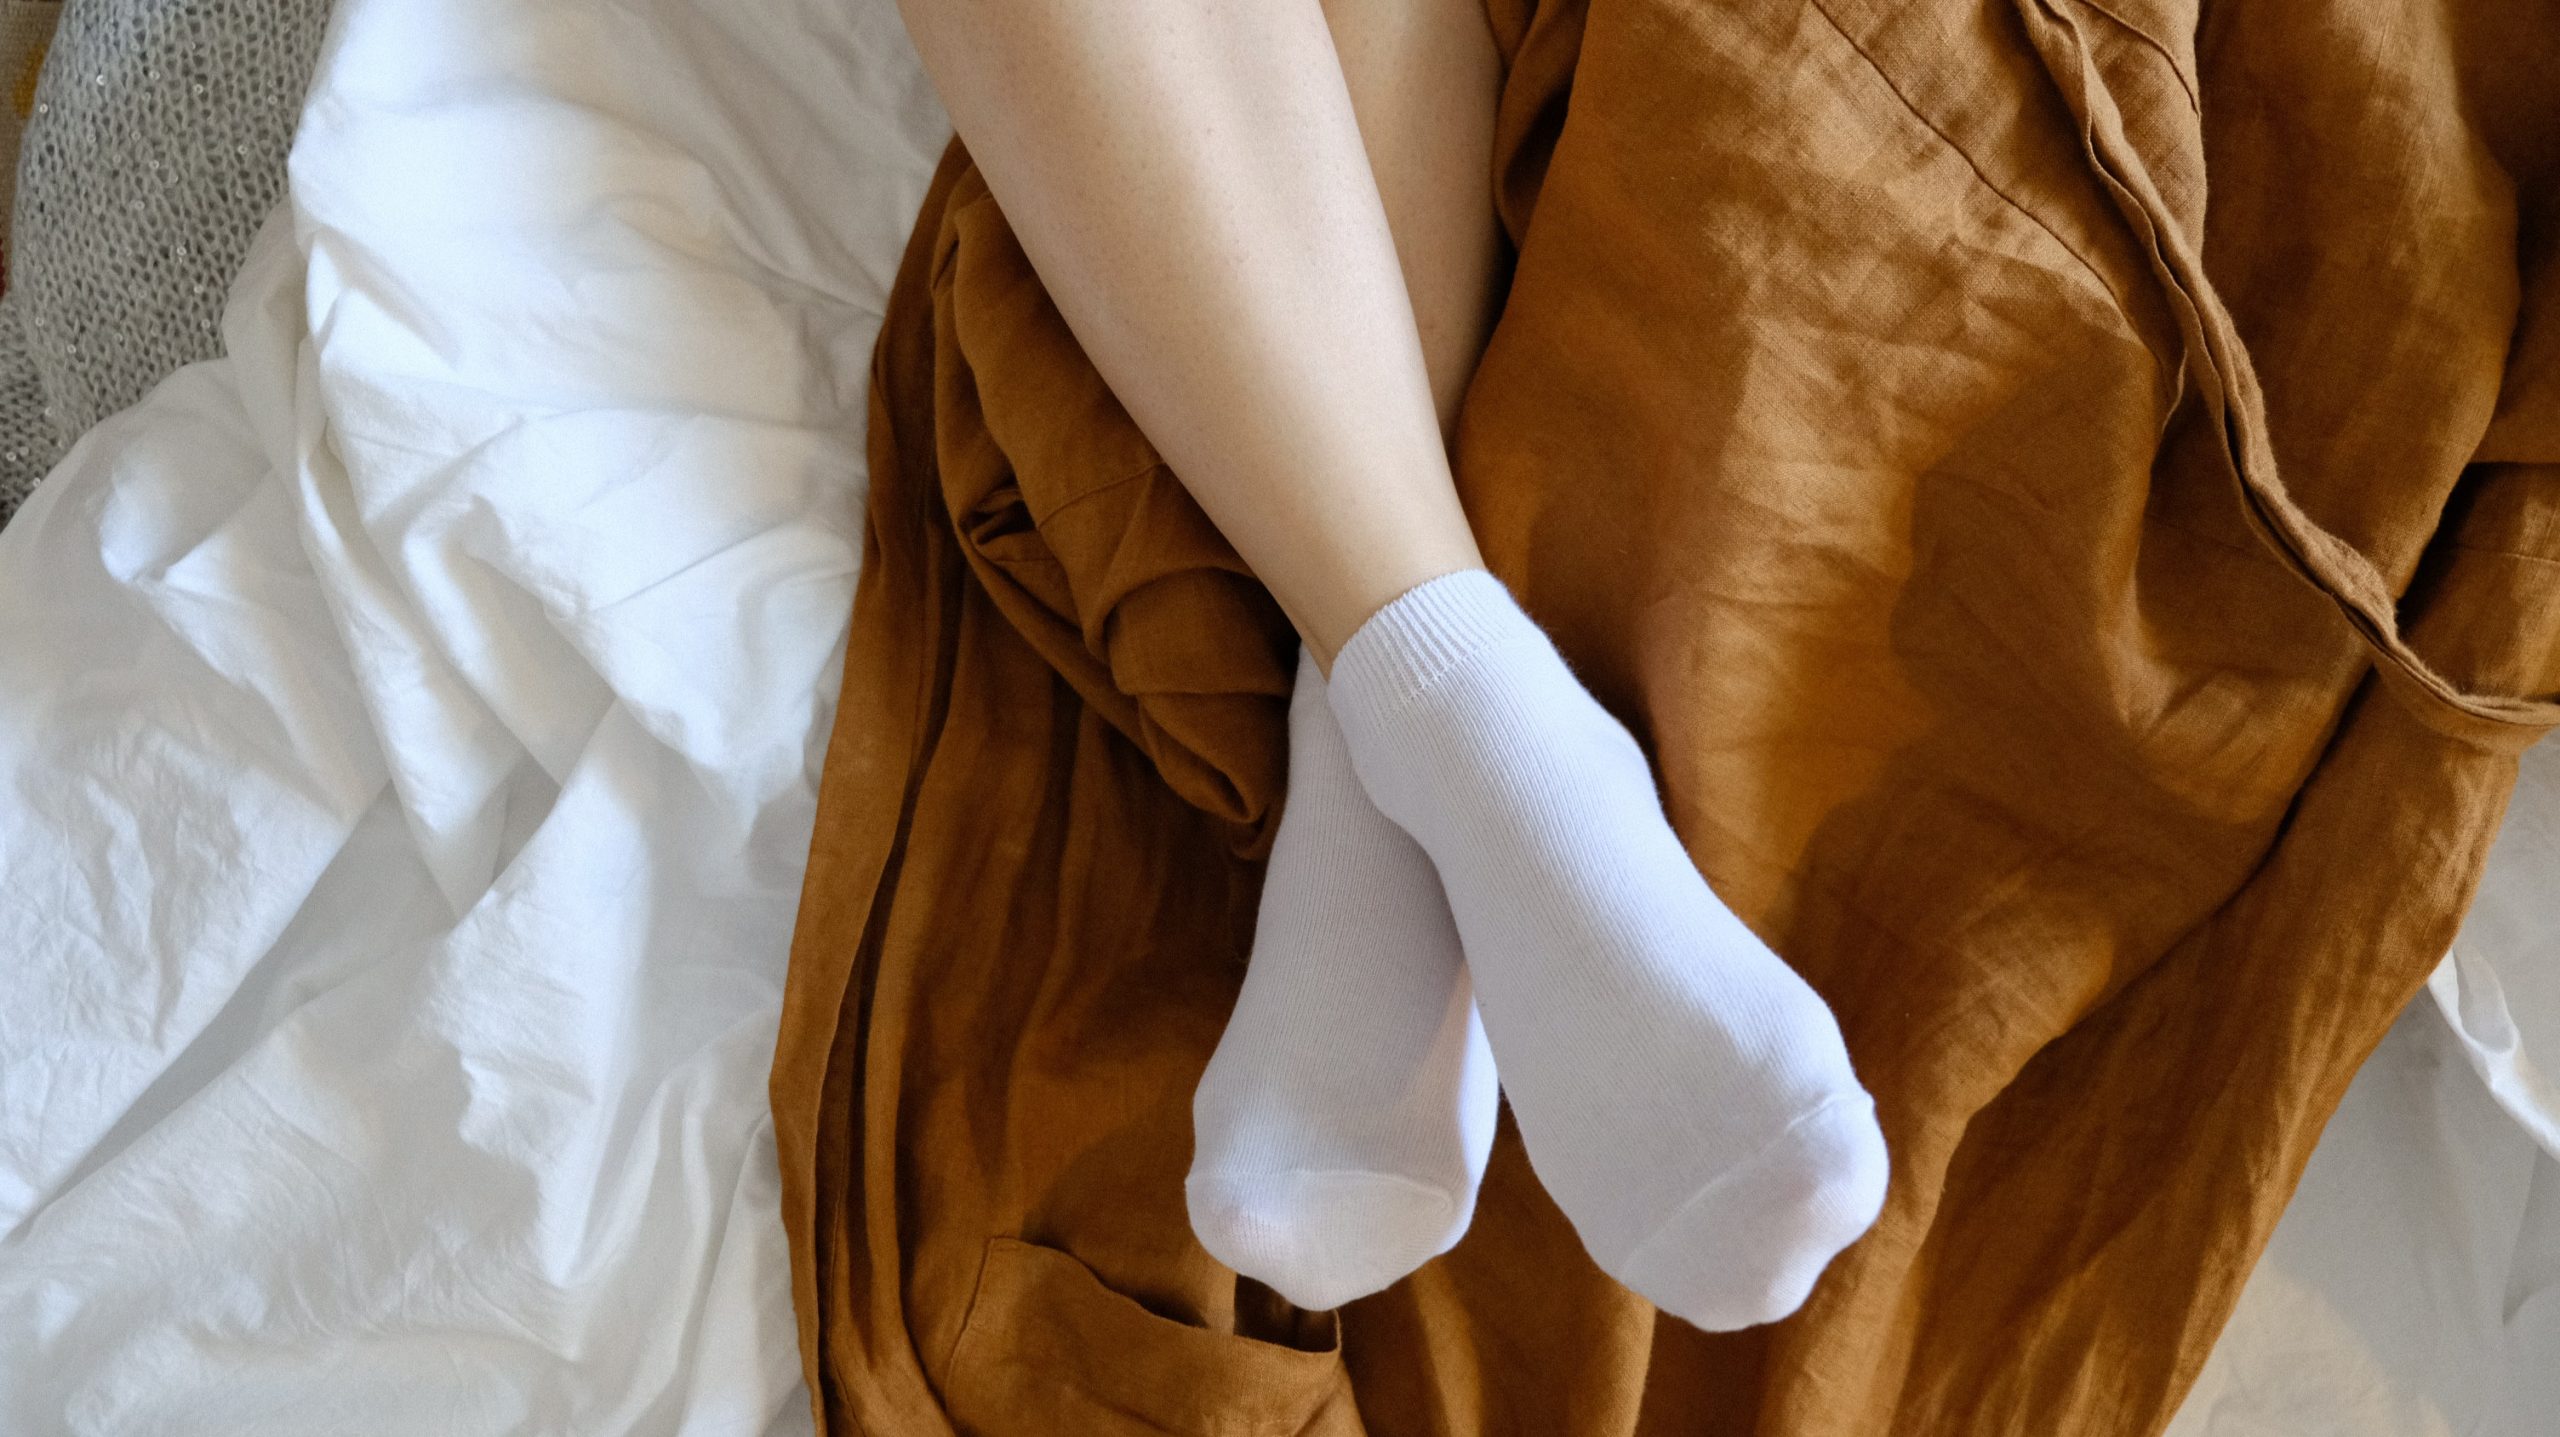 Неистовая дама в белых носочках